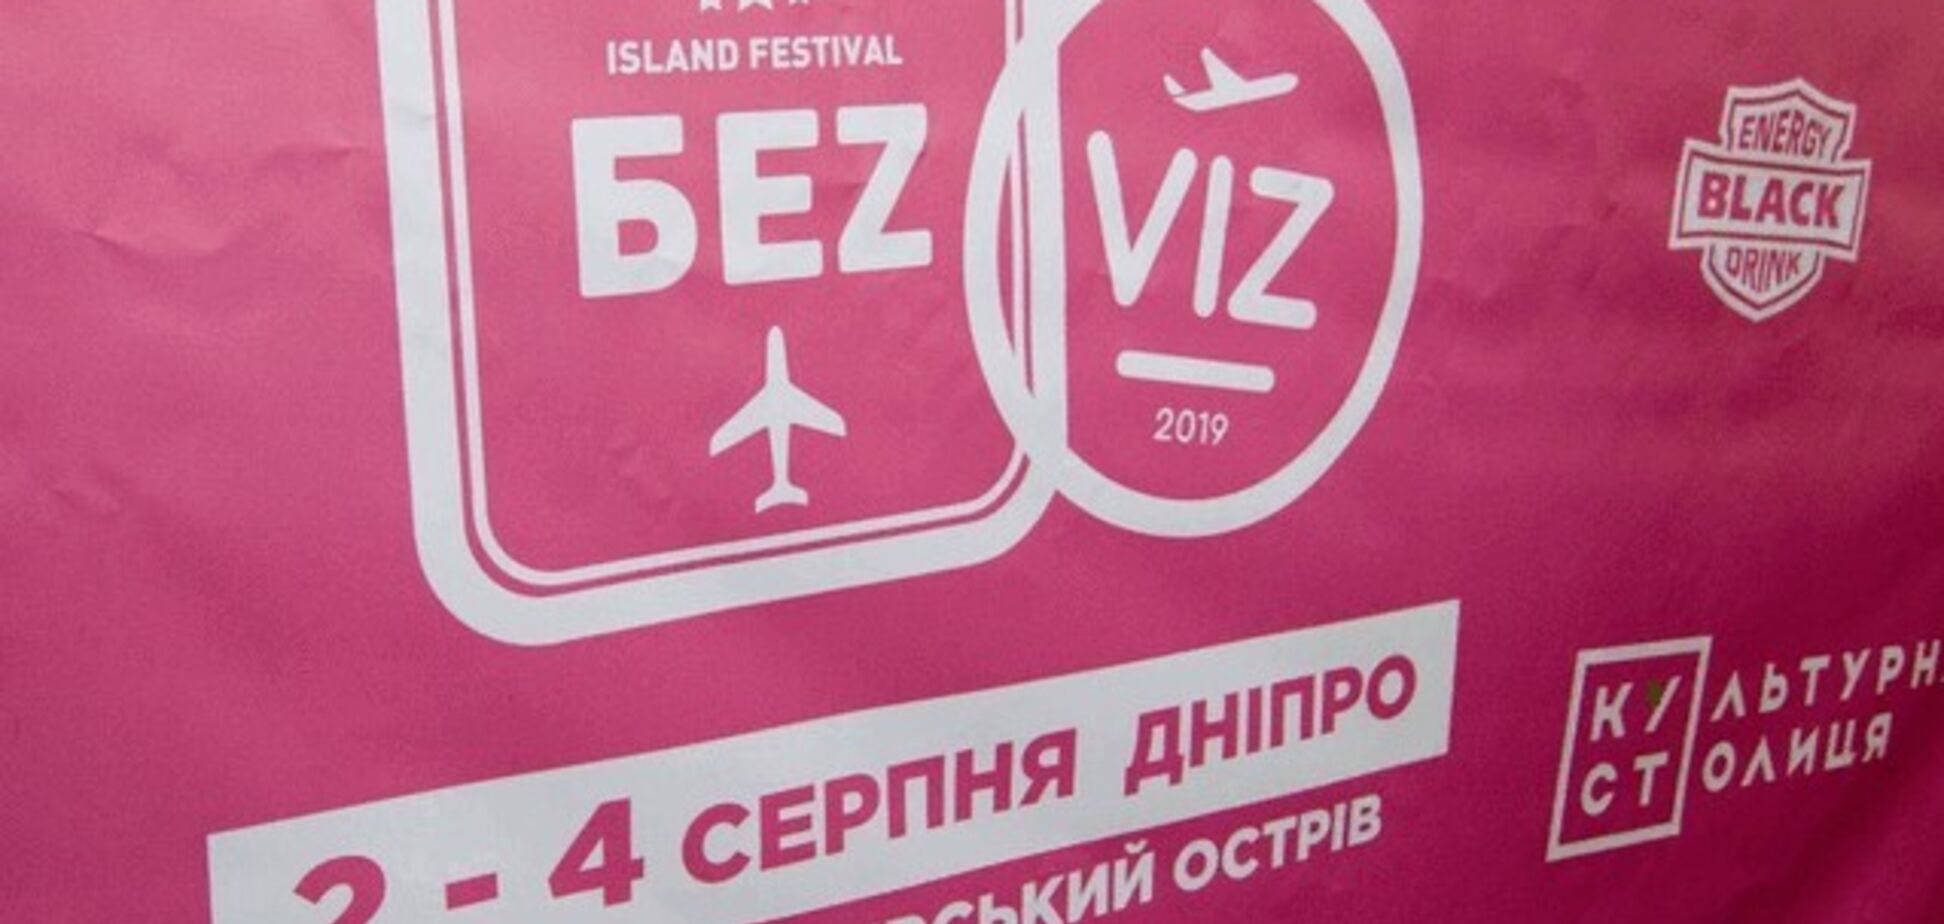 'Lordi', 'Kadebostani' і 'Skindred': в Дніпрі відбудеться музичний фестиваль 'БеzViz'